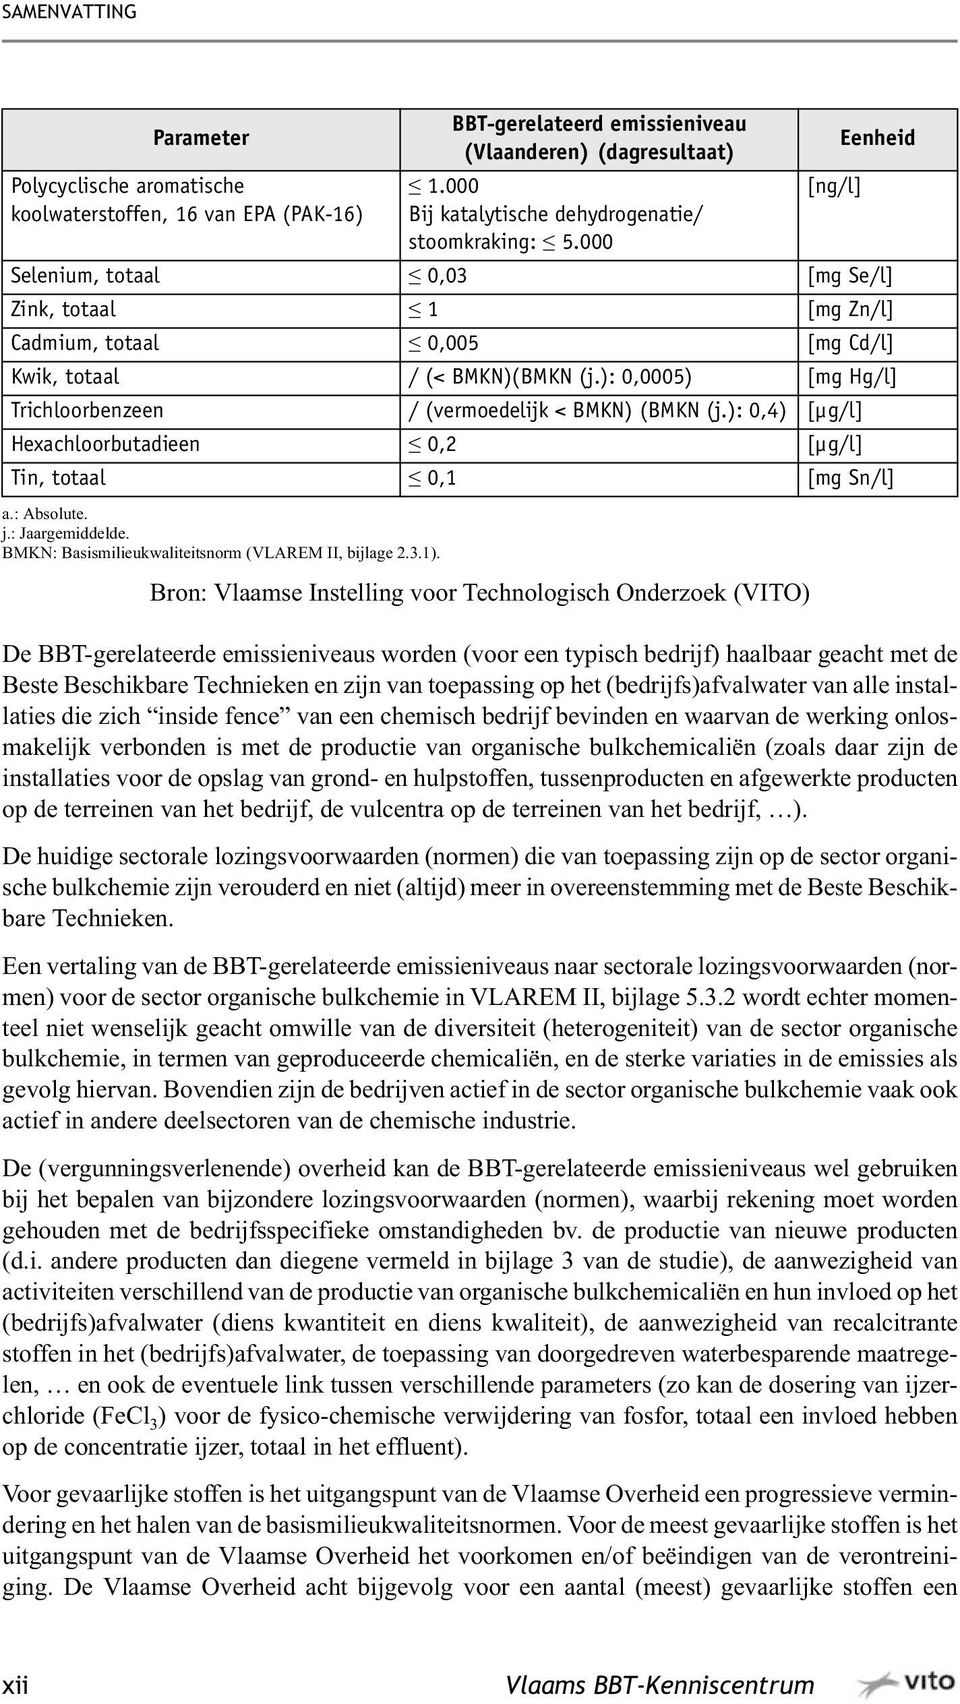 000 Bron: Vlaamse Instelling voor Technologisch Onderzoek (VITO) [ng/l] Eenheid Selenium, totaal 0,03 [mg Se/l] Zink, totaal 1 [mg Zn/l] Cadmium, totaal 0,005 [mg Cd/l] Kwik, totaal / (< BMKN)(BMKN